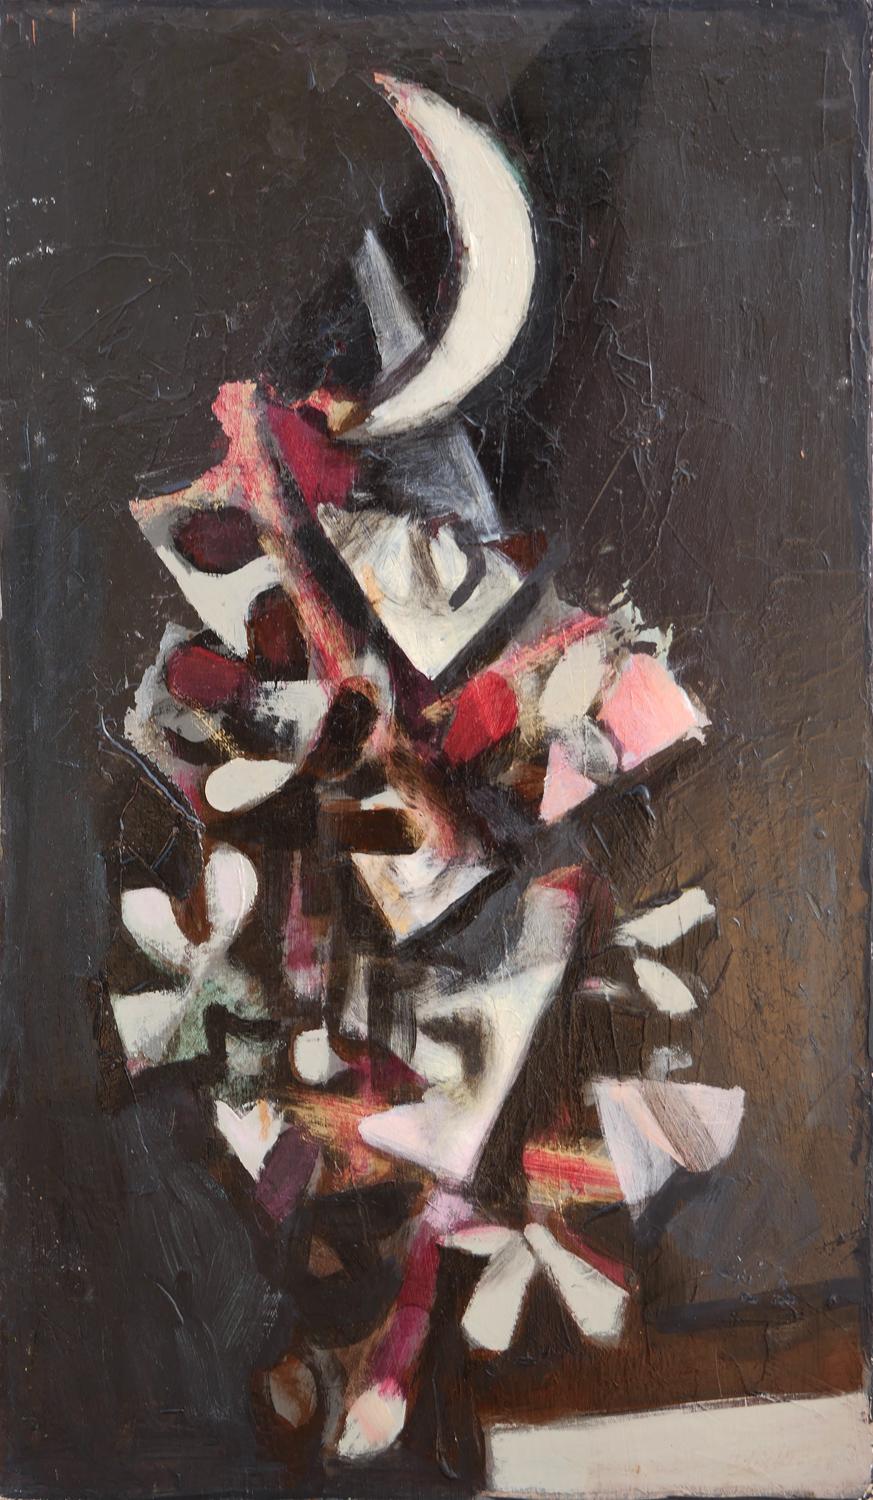 Modernes kubistisch inspiriertes Nachtstillleben des Künstlers David Adickes aus Houston, TX. Das Werk zeigt cremefarbene, rote und graue abstrakte fallende Blätter vor einem schwarzen Hintergrund. Derzeit ungerahmt, aber Optionen sind